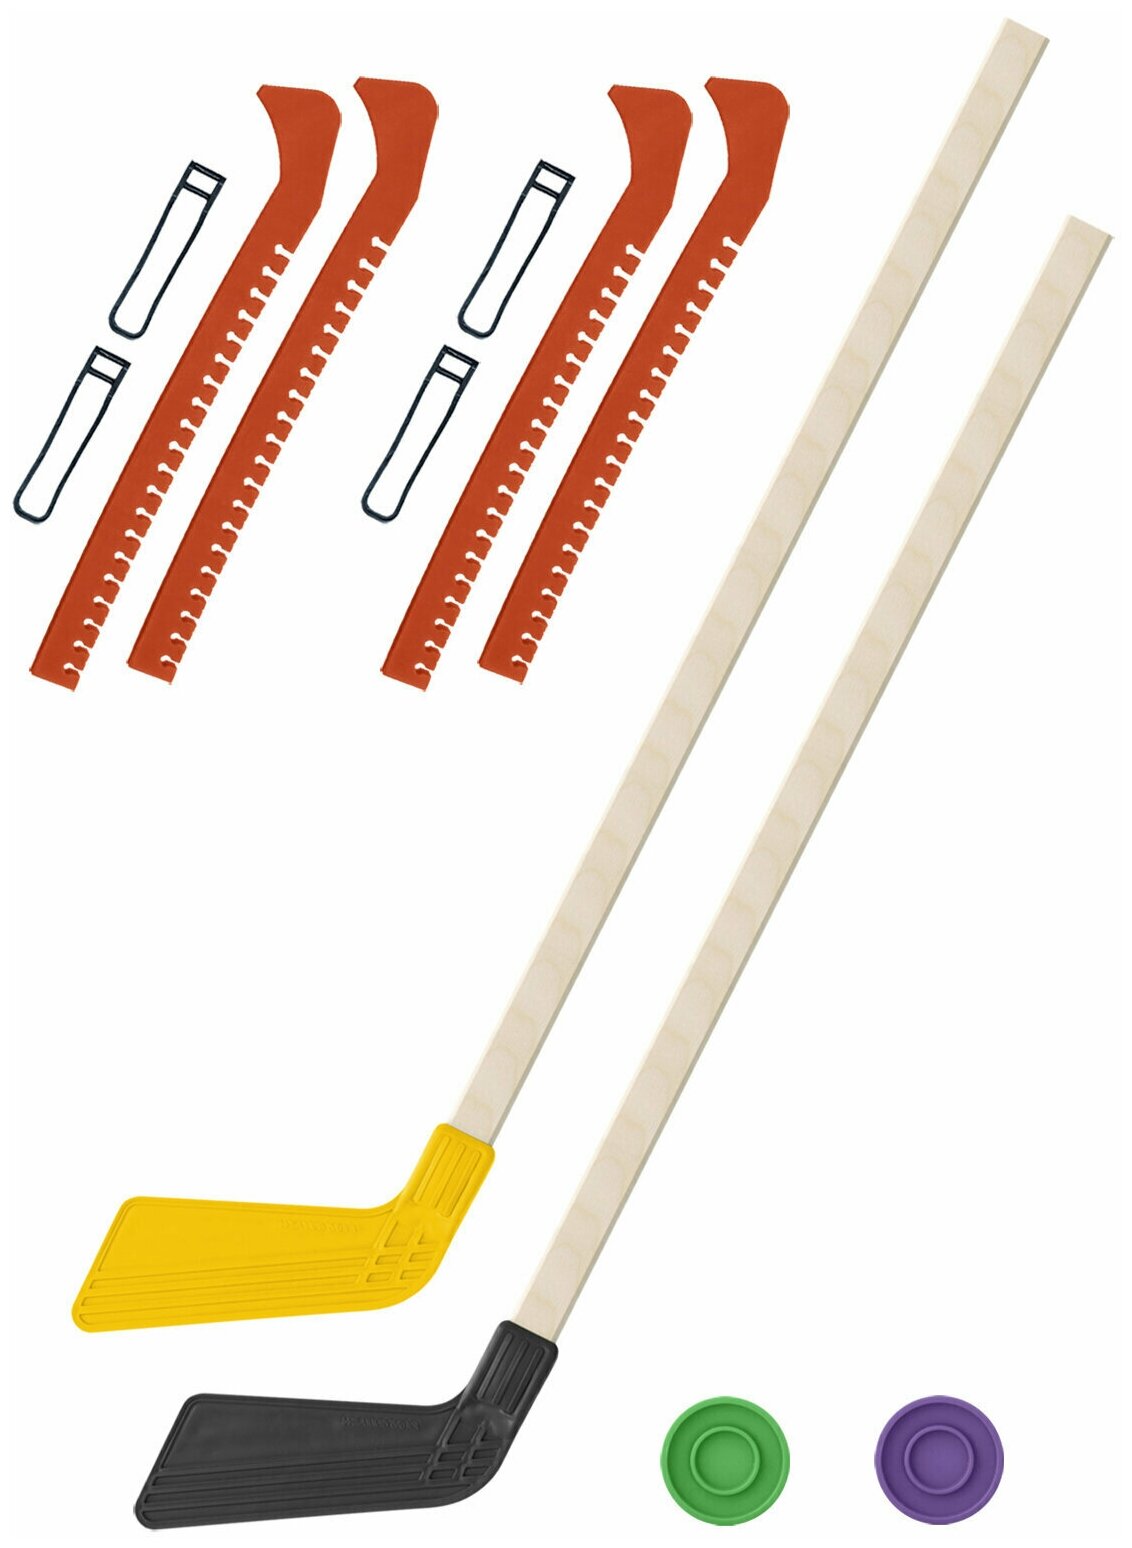 Детский хоккейный набор для игр на улице Клюшка хоккейная детская 2 шт жёлтая и чёрная 80 см. + 2 шайбы + Чехлы для коньков оранжевые - 2 шт.